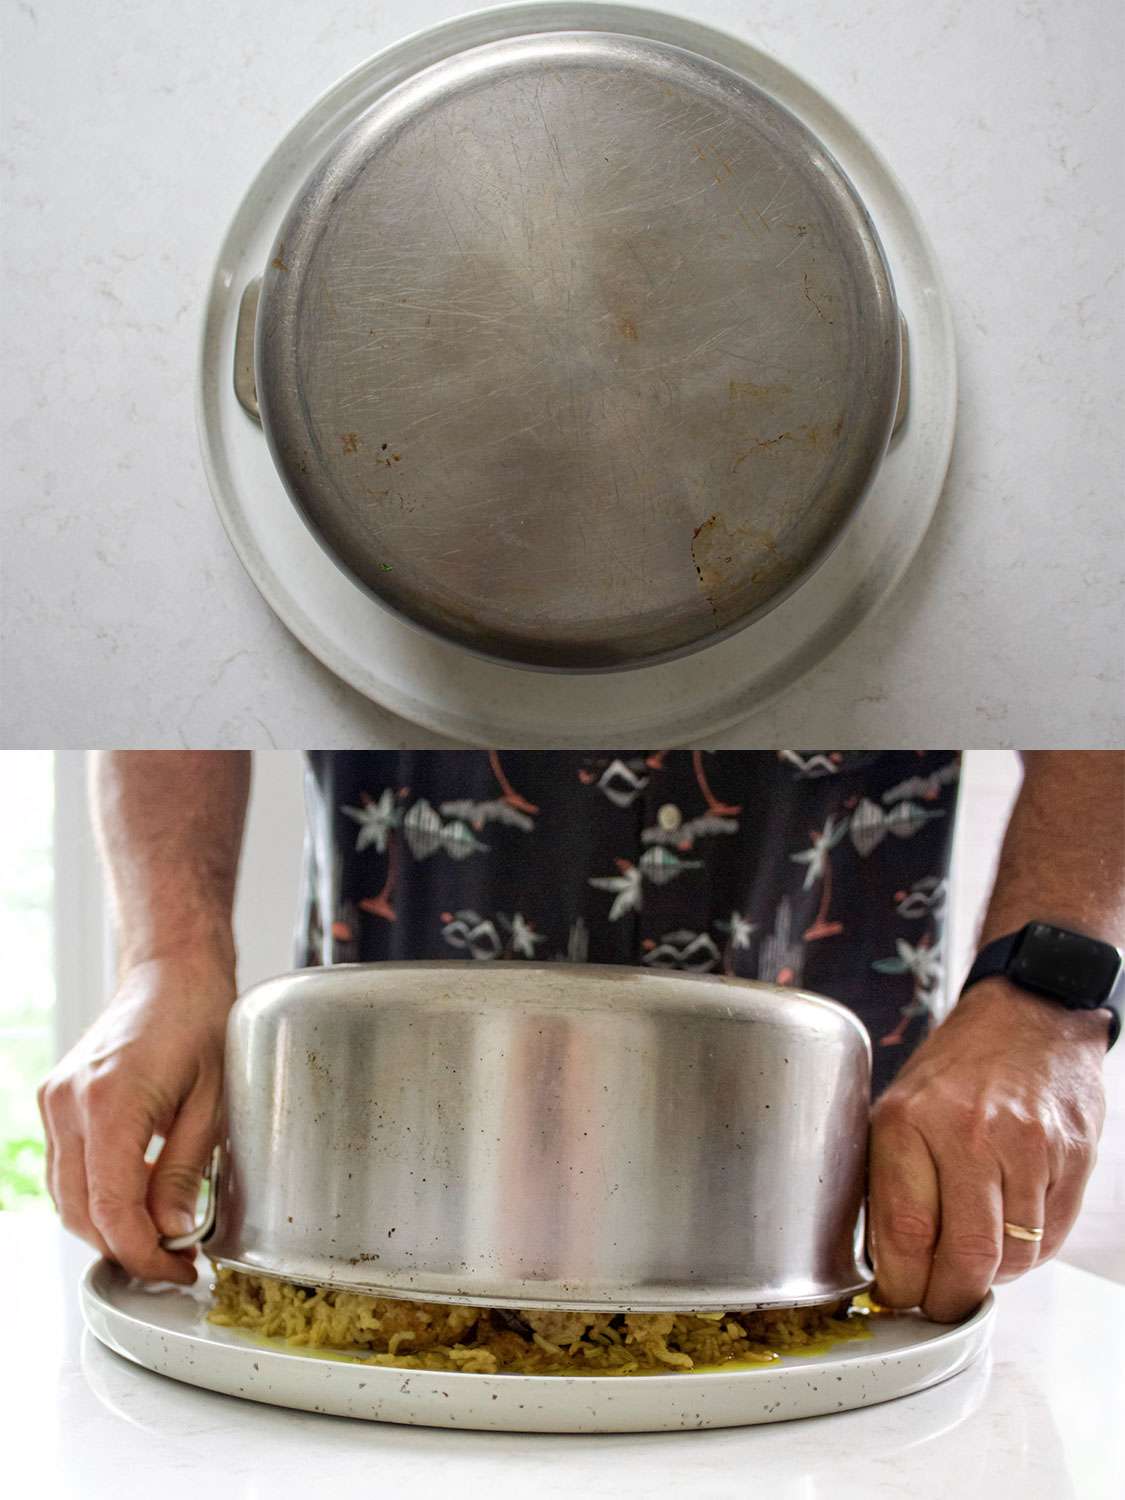 二图像拼贴。上:锅翻转到一个大盘子上。下图:一个人慢慢地把锅从盘子上拿起来，展示下面完好无损的maqlubeh